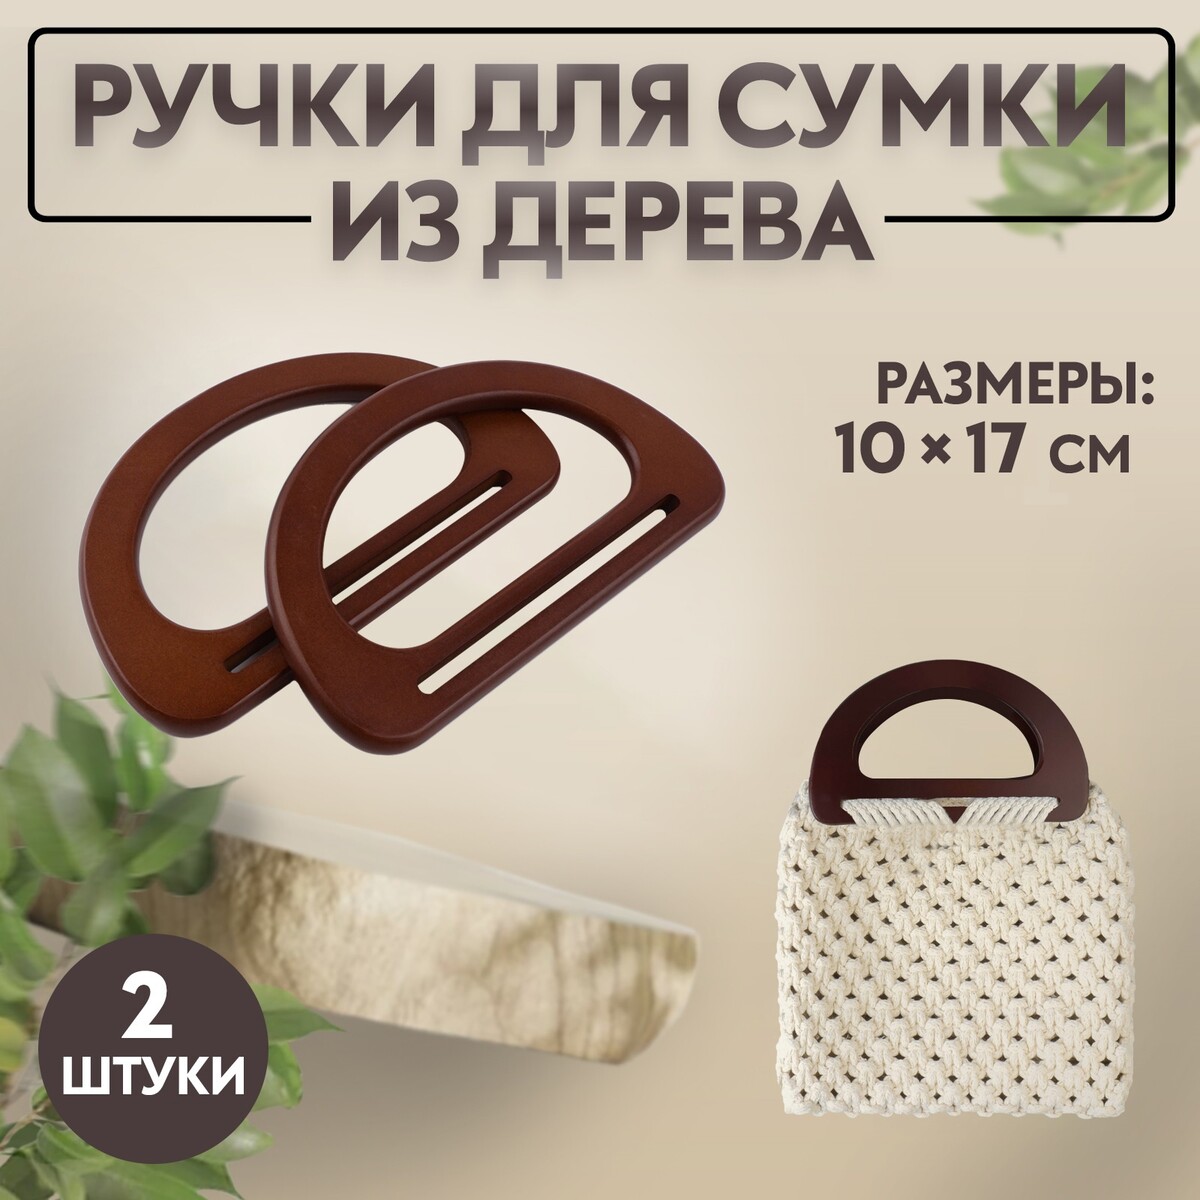 Ручки для сумки деревянные, 10 × 17 см, 2 шт, цвет темно-коричневый ручки для сумки 2 шт бамбук 17 × 13 15 5 × 11 5 см светло коричневый